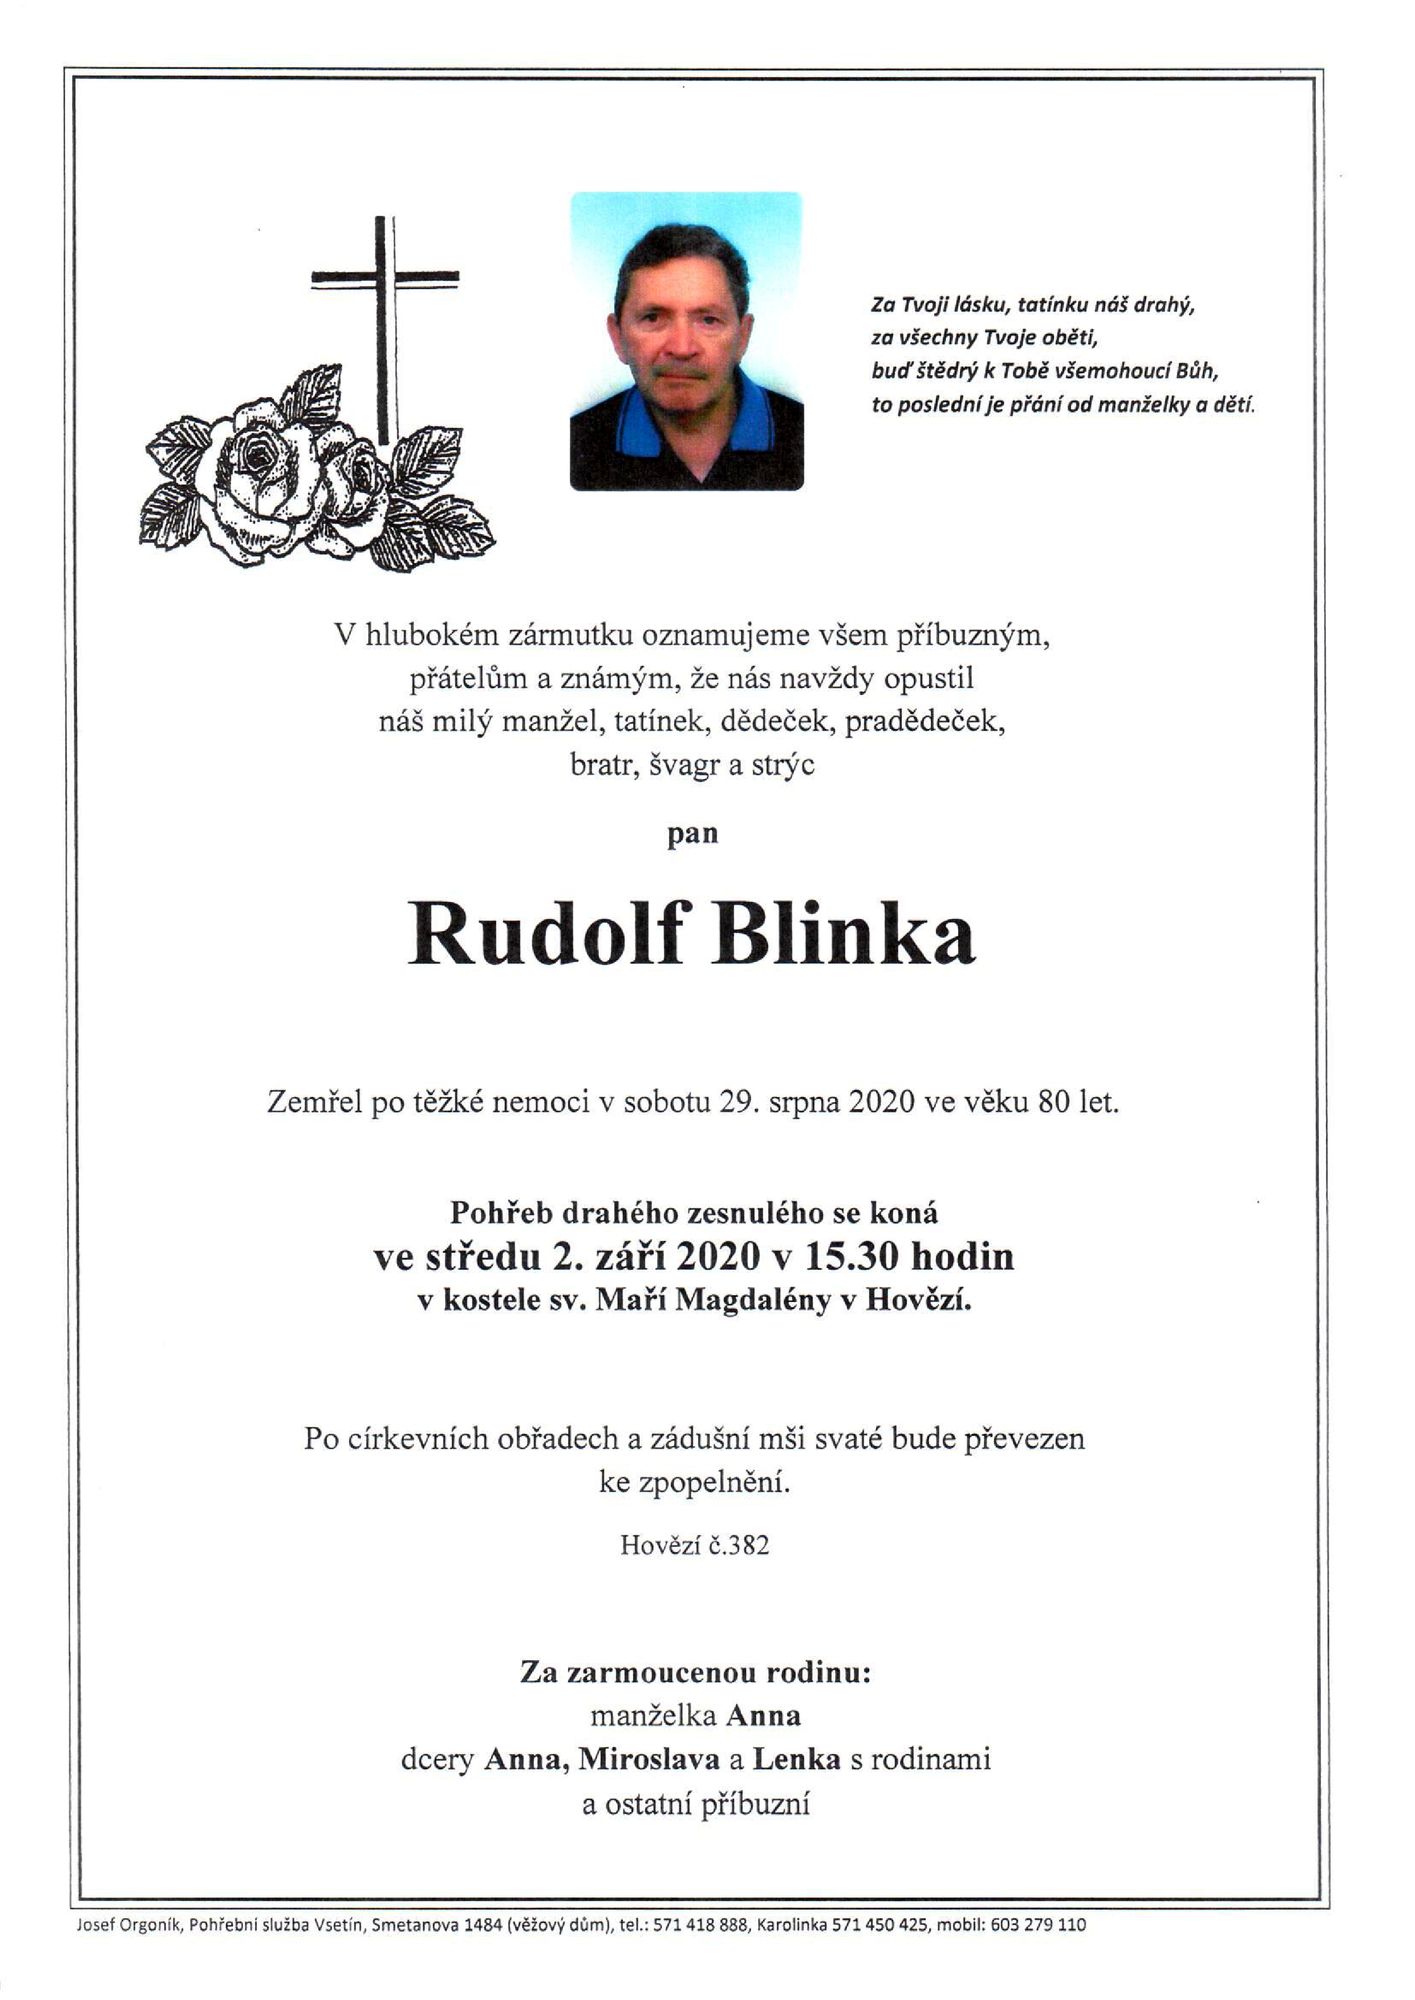 Rudolf Blinka